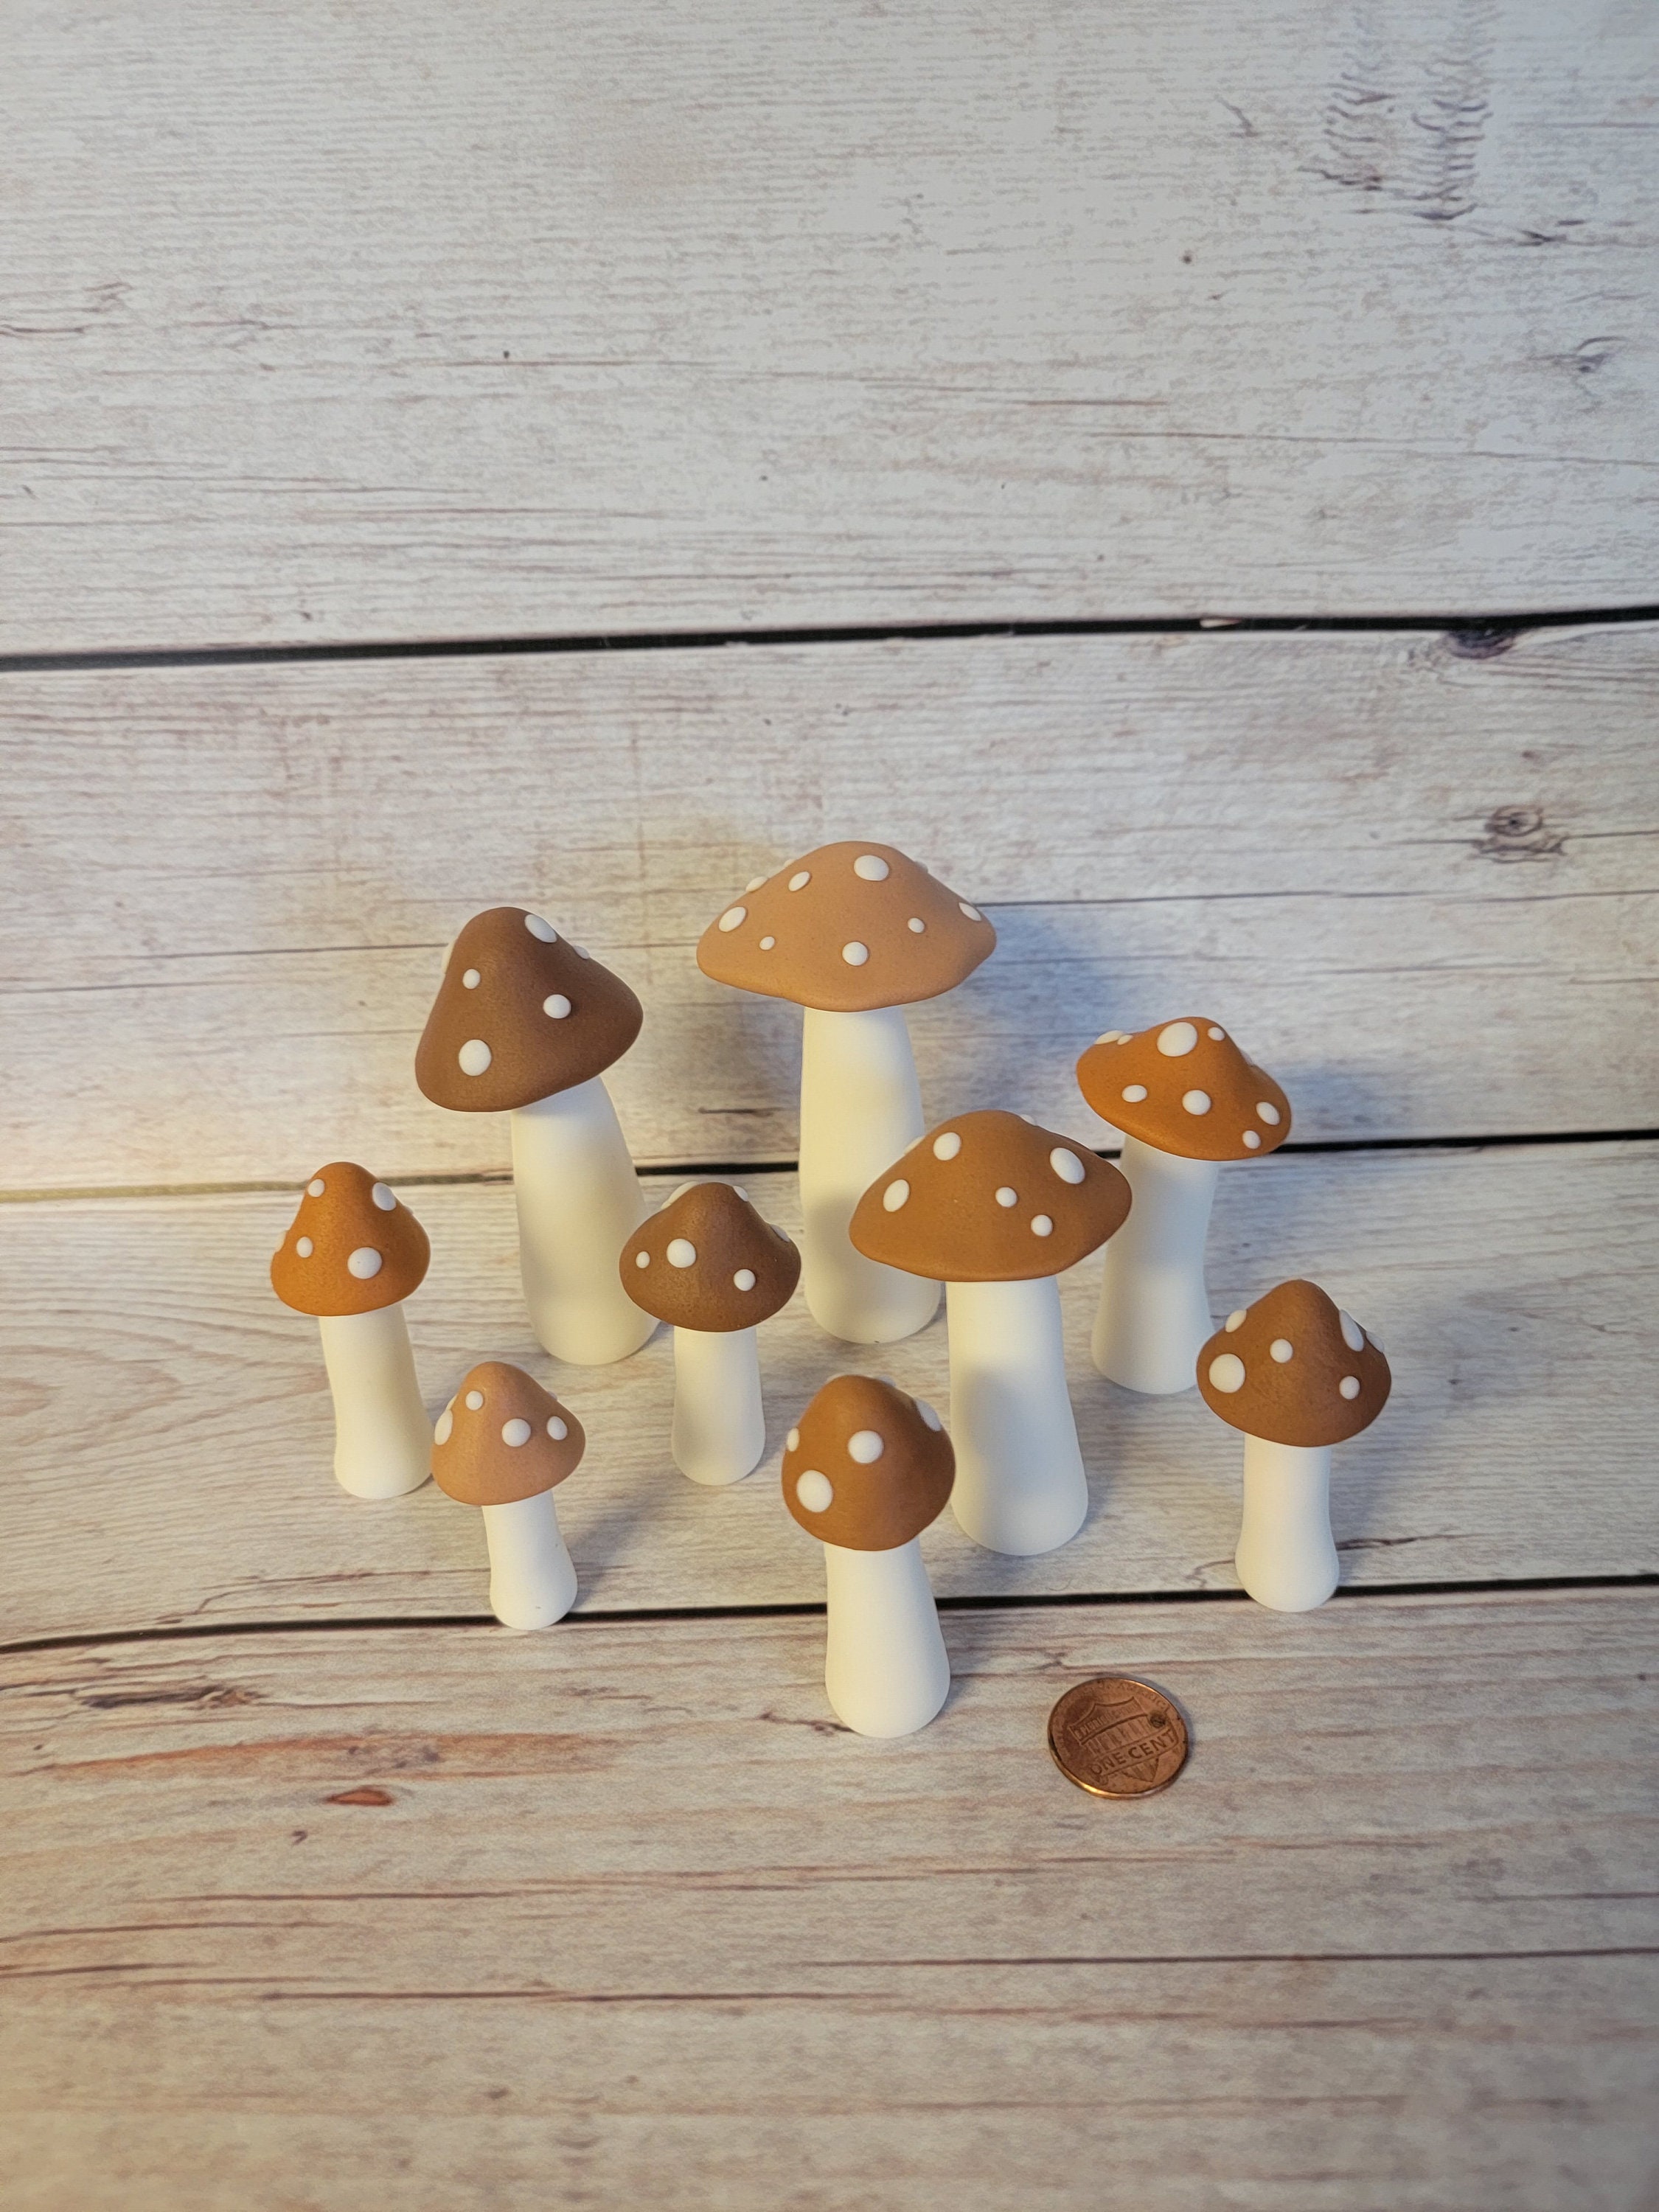 4 Red or Green Glitter Mushrooms Wooden Mushrooms Craft Mushrooms